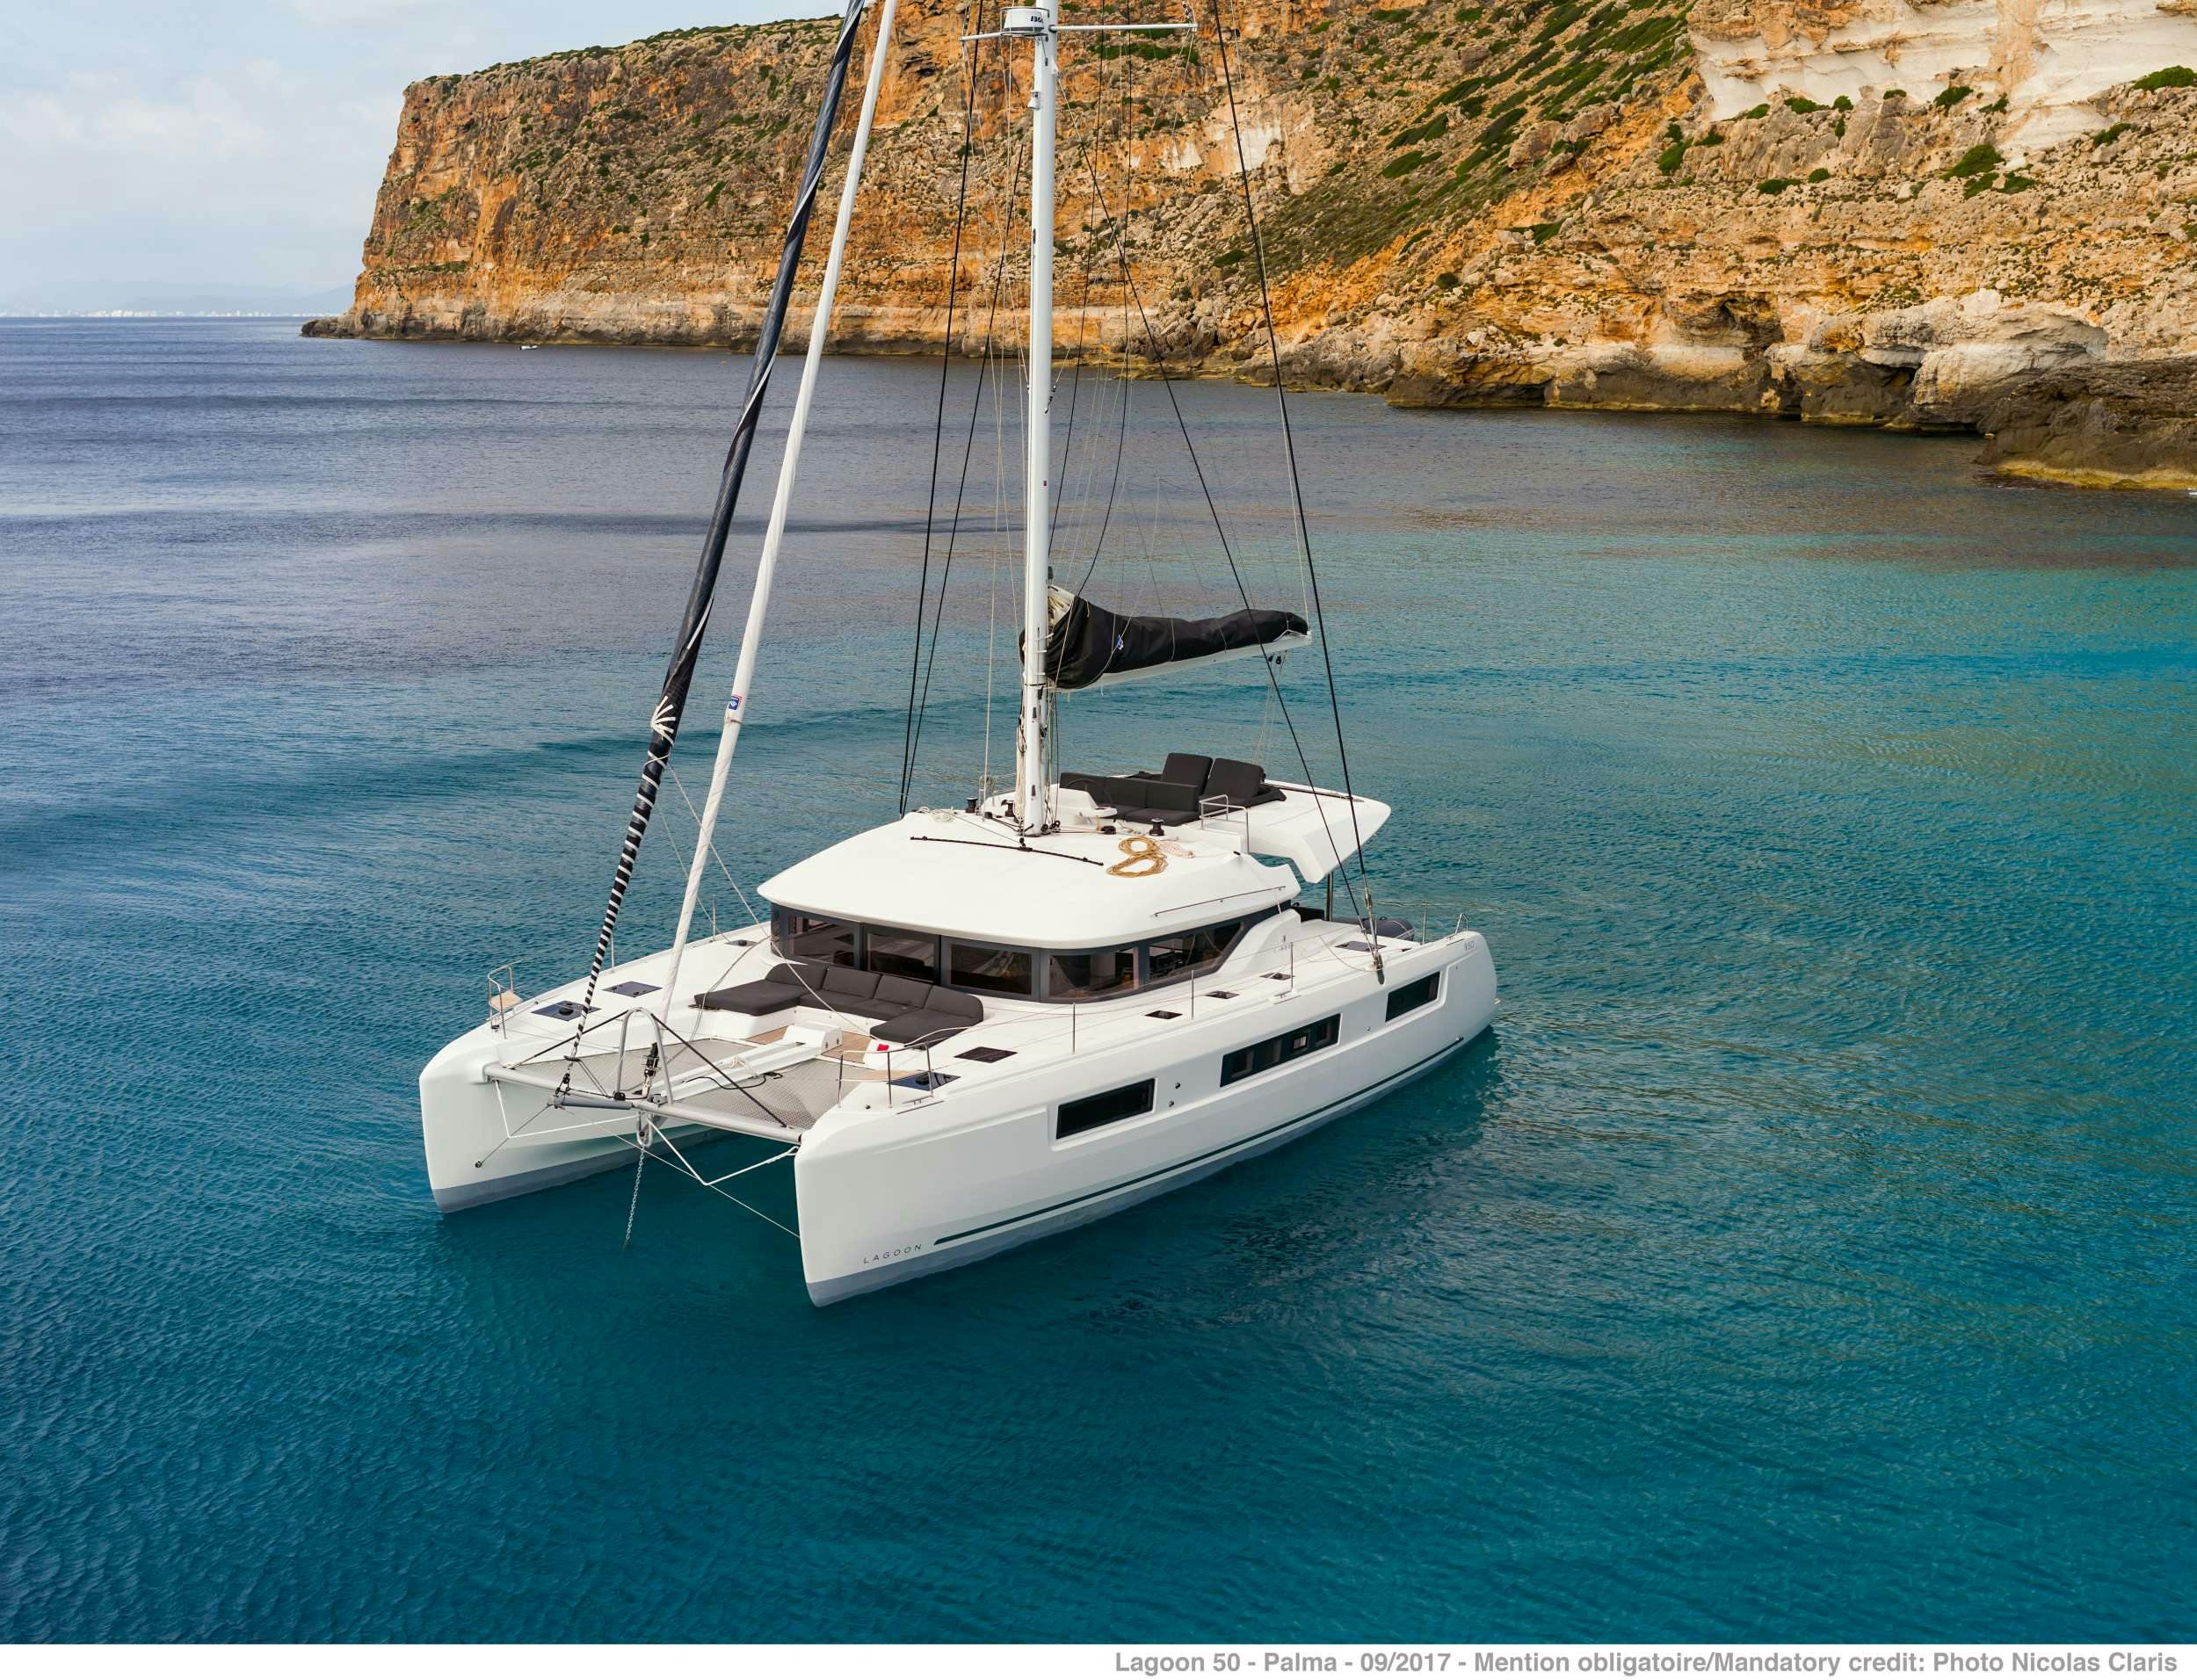 ONEIDA 2 - Yacht Charter Zakynthos & Boat hire in Greece 1